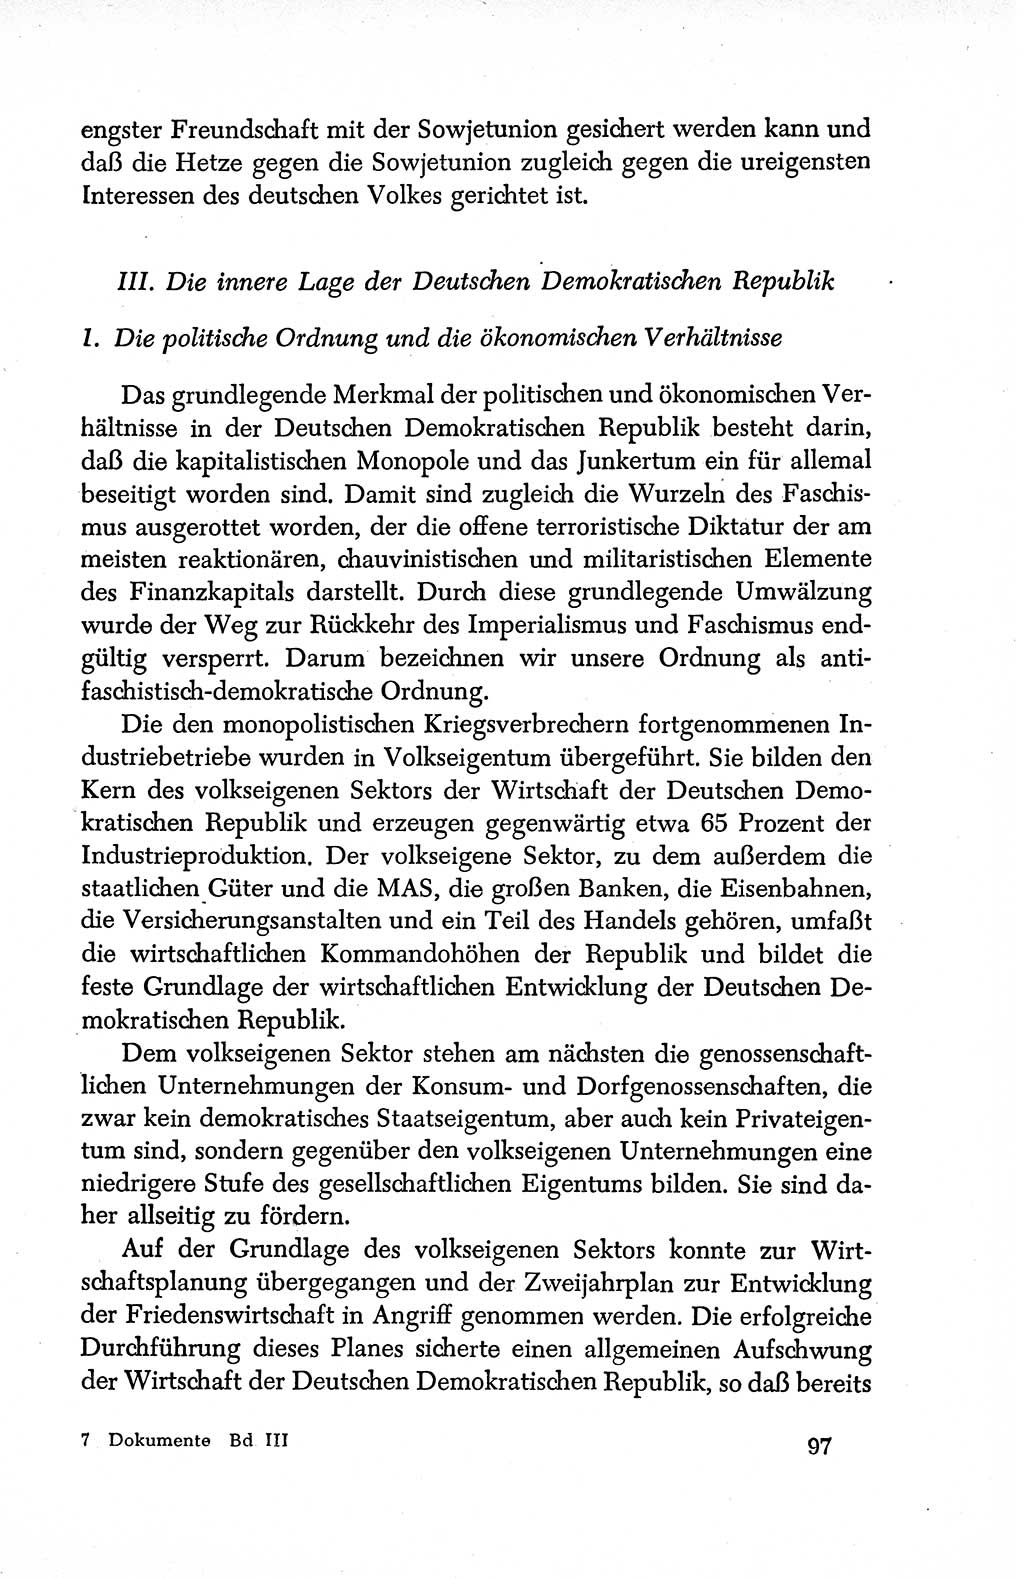 Dokumente der Sozialistischen Einheitspartei Deutschlands (SED) [Deutsche Demokratische Republik (DDR)] 1950-1952, Seite 97 (Dok. SED DDR 1950-1952, S. 97)